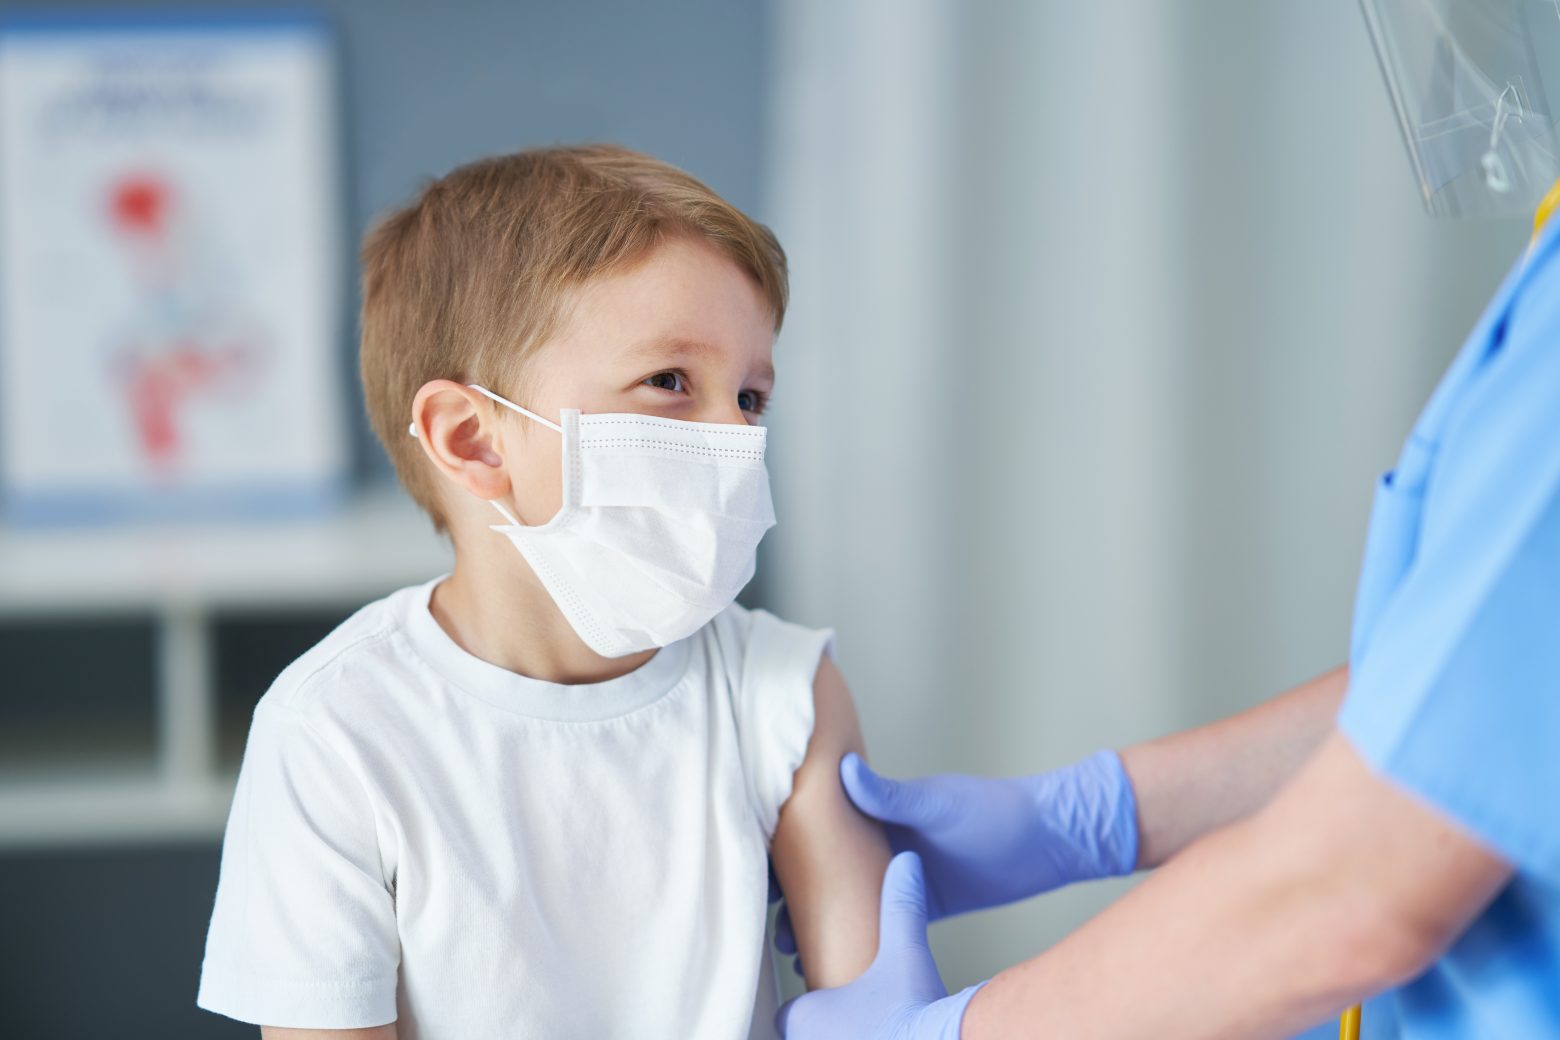 Αυστραλία - Εξετάζεται η χορήγηση εμβολίων για τον κοροναϊό σε παιδιά κάτω των 12 ετών από τον Ιανουάριο